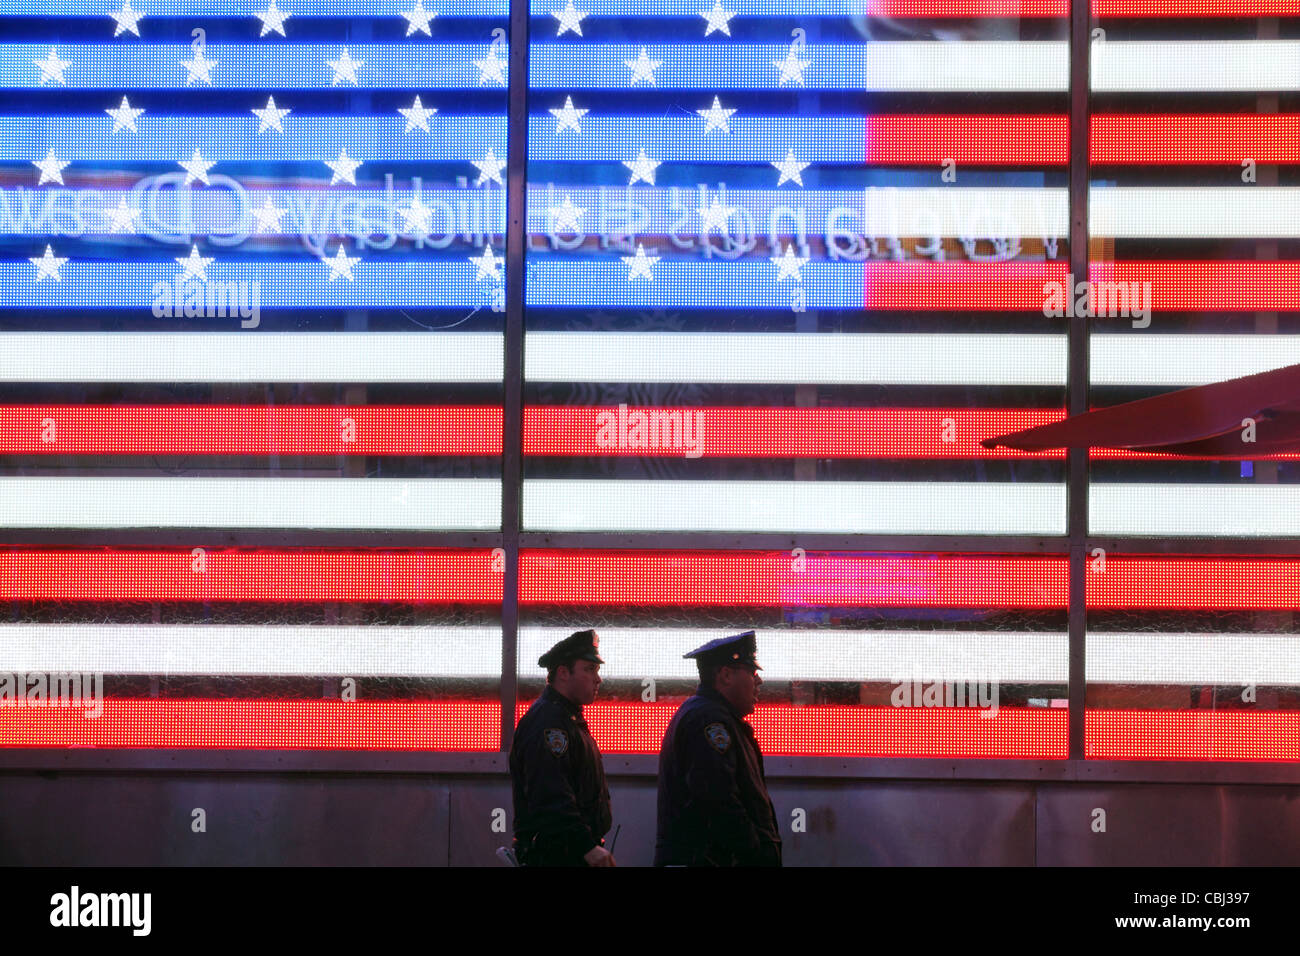 Deux policiers de New York à pied passé, Allumé Stars & Stripes, United States Flag, Times Square, New York City, NY, USA Banque D'Images